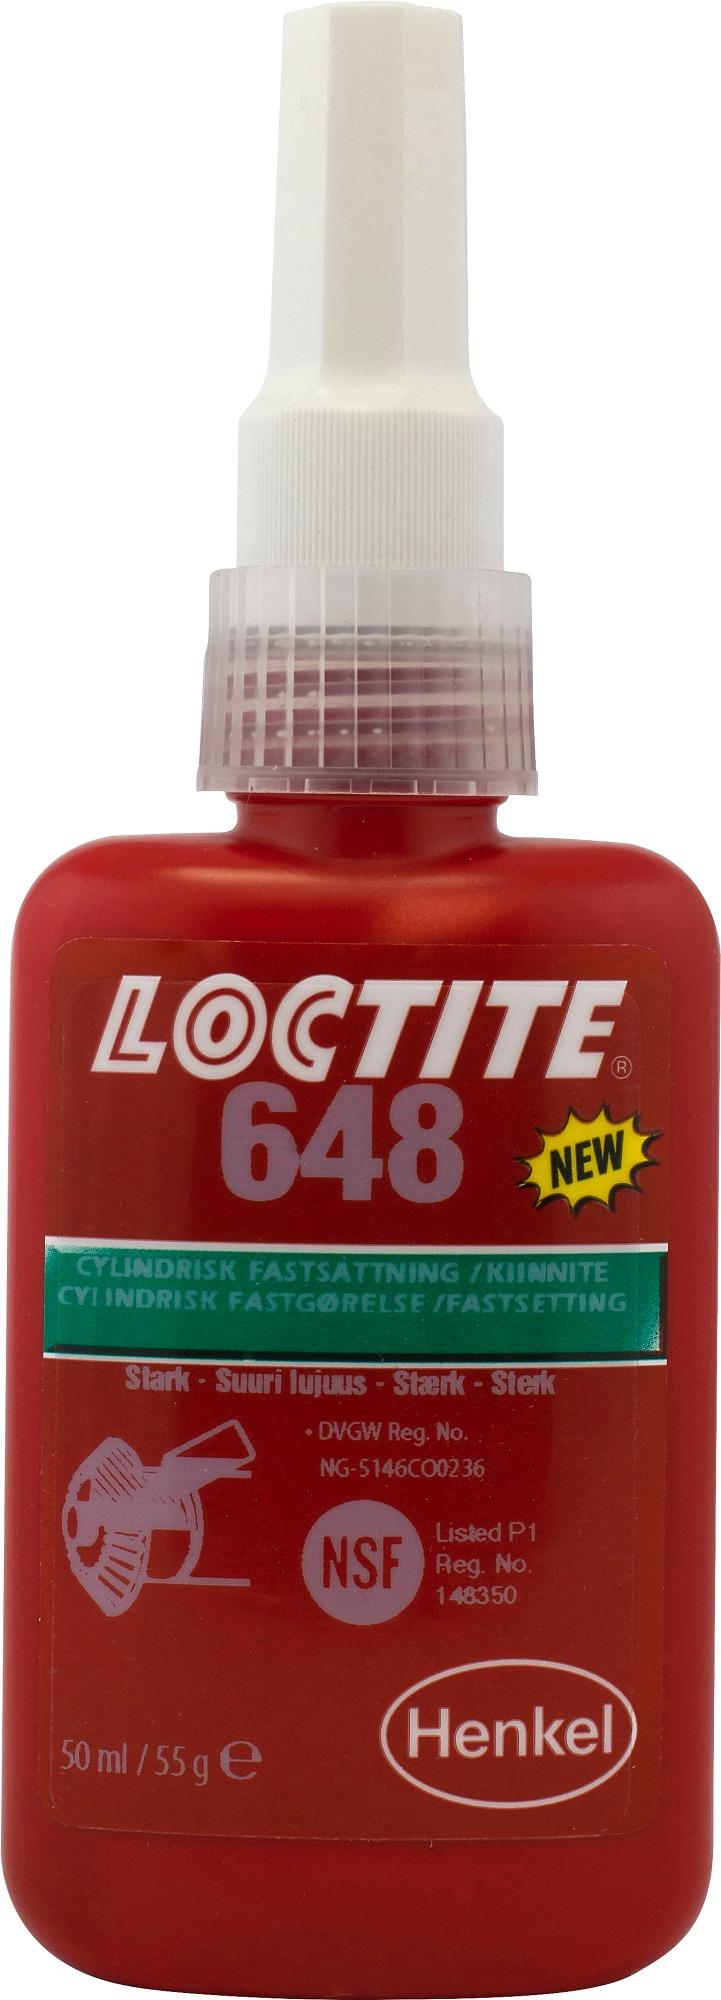 Lejesikring Loctite 648 50 ml